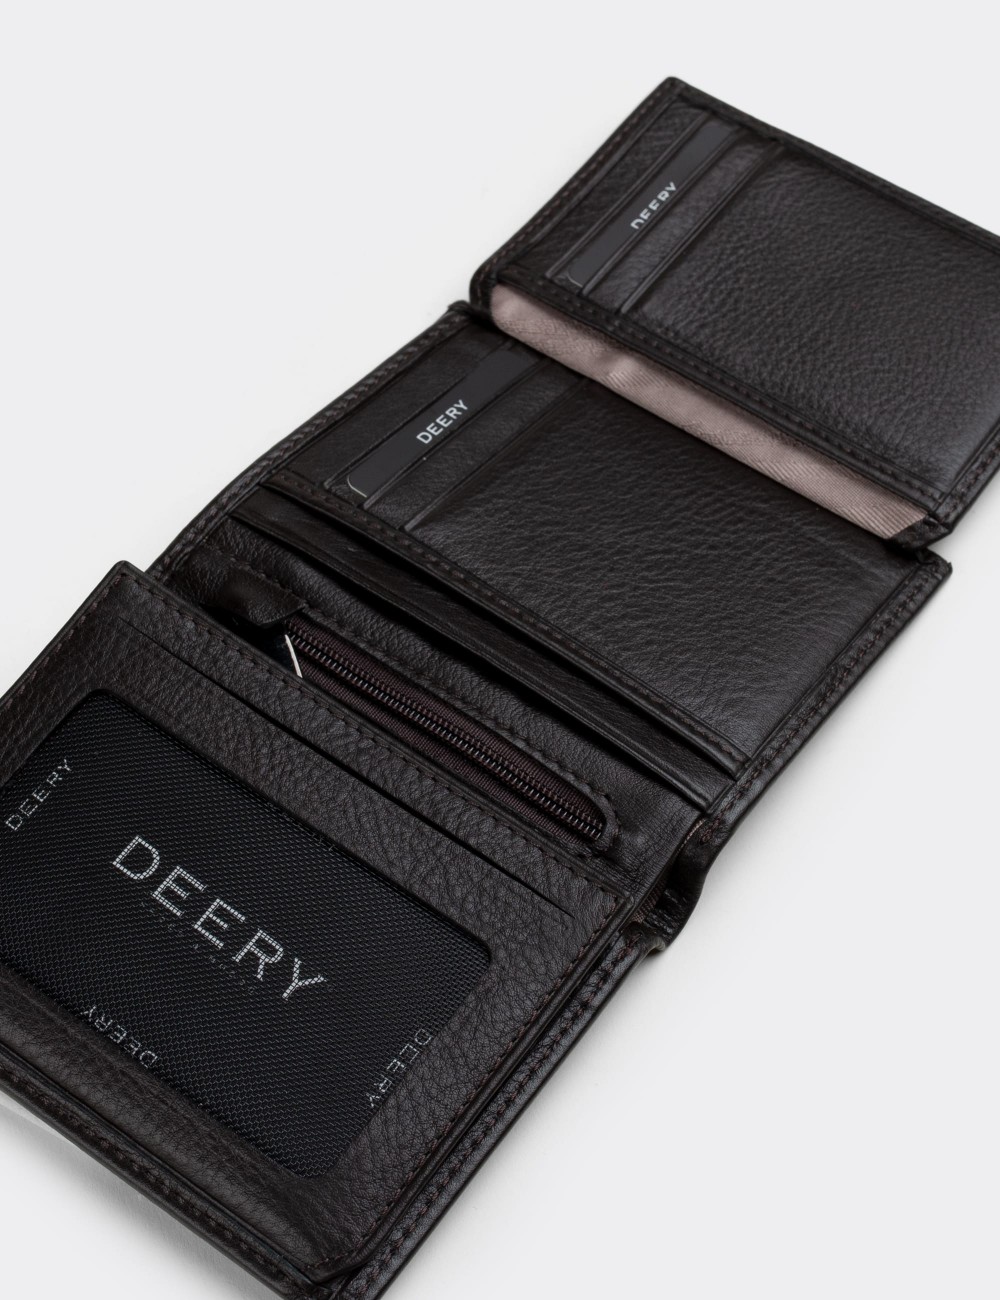  Leather Black Men's Wallet - 00288MSYHZ01